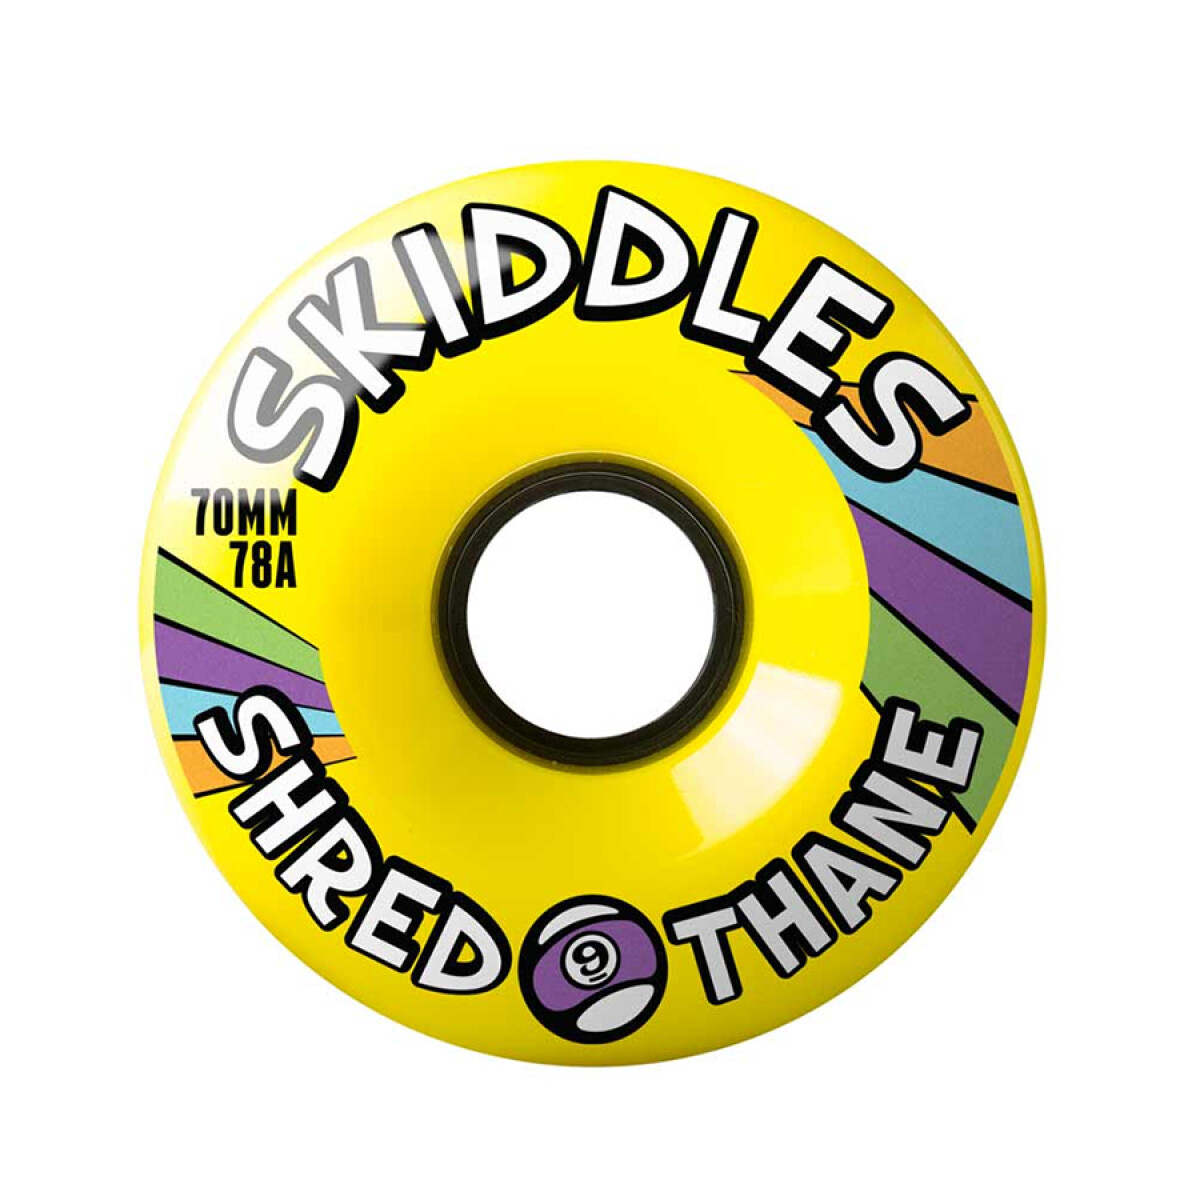 Ruedas Sector 9 Skiddles Yellow 70mm 78a 